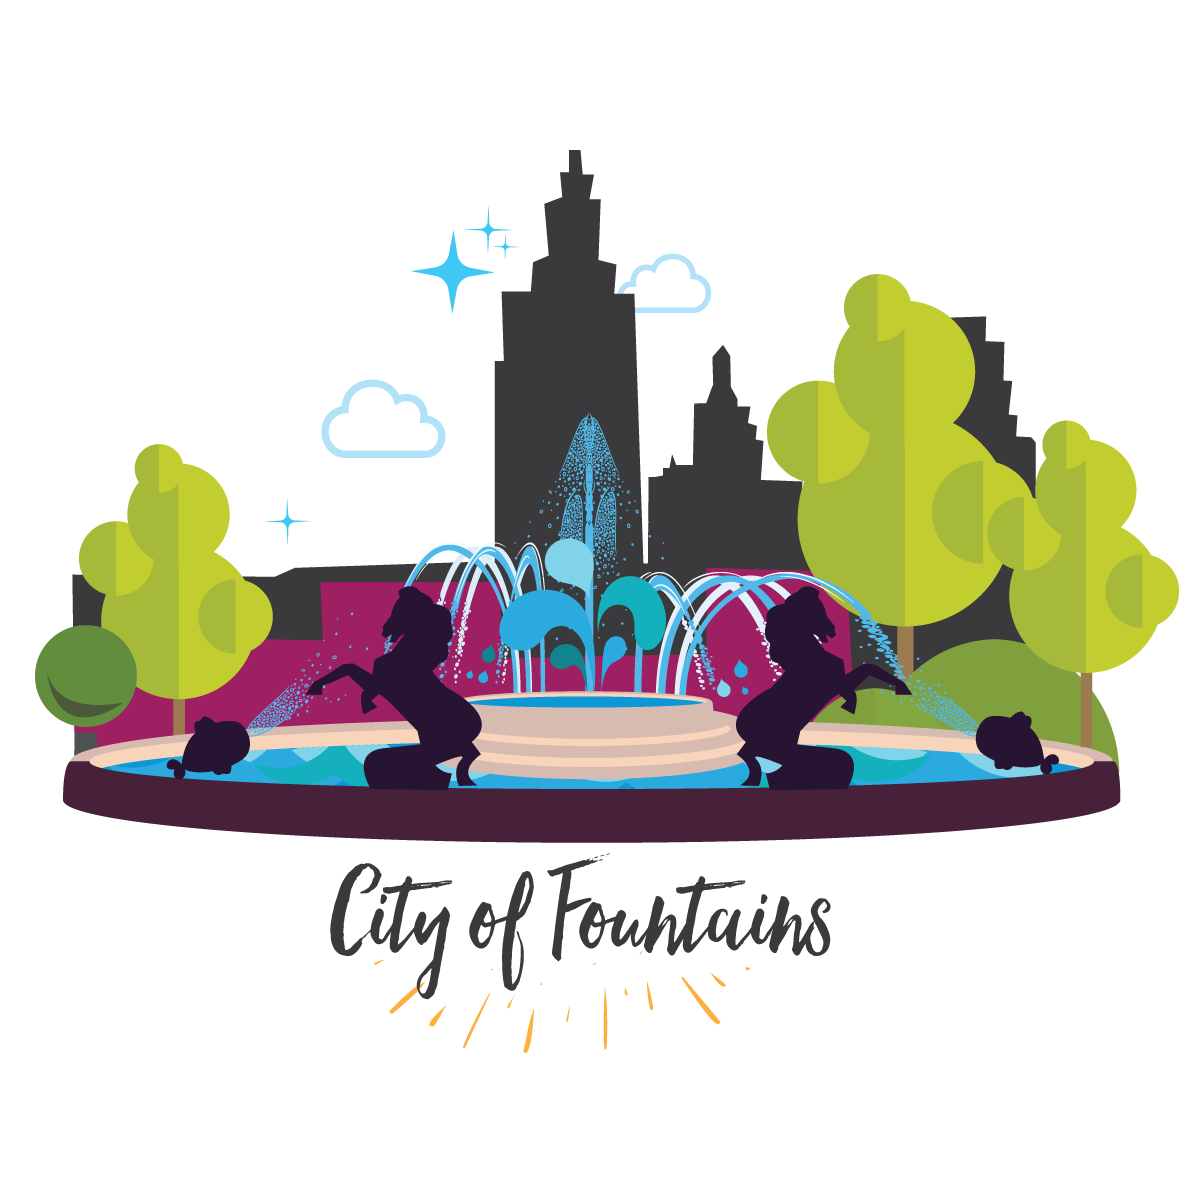 Emoji My City, Plaza Fountains